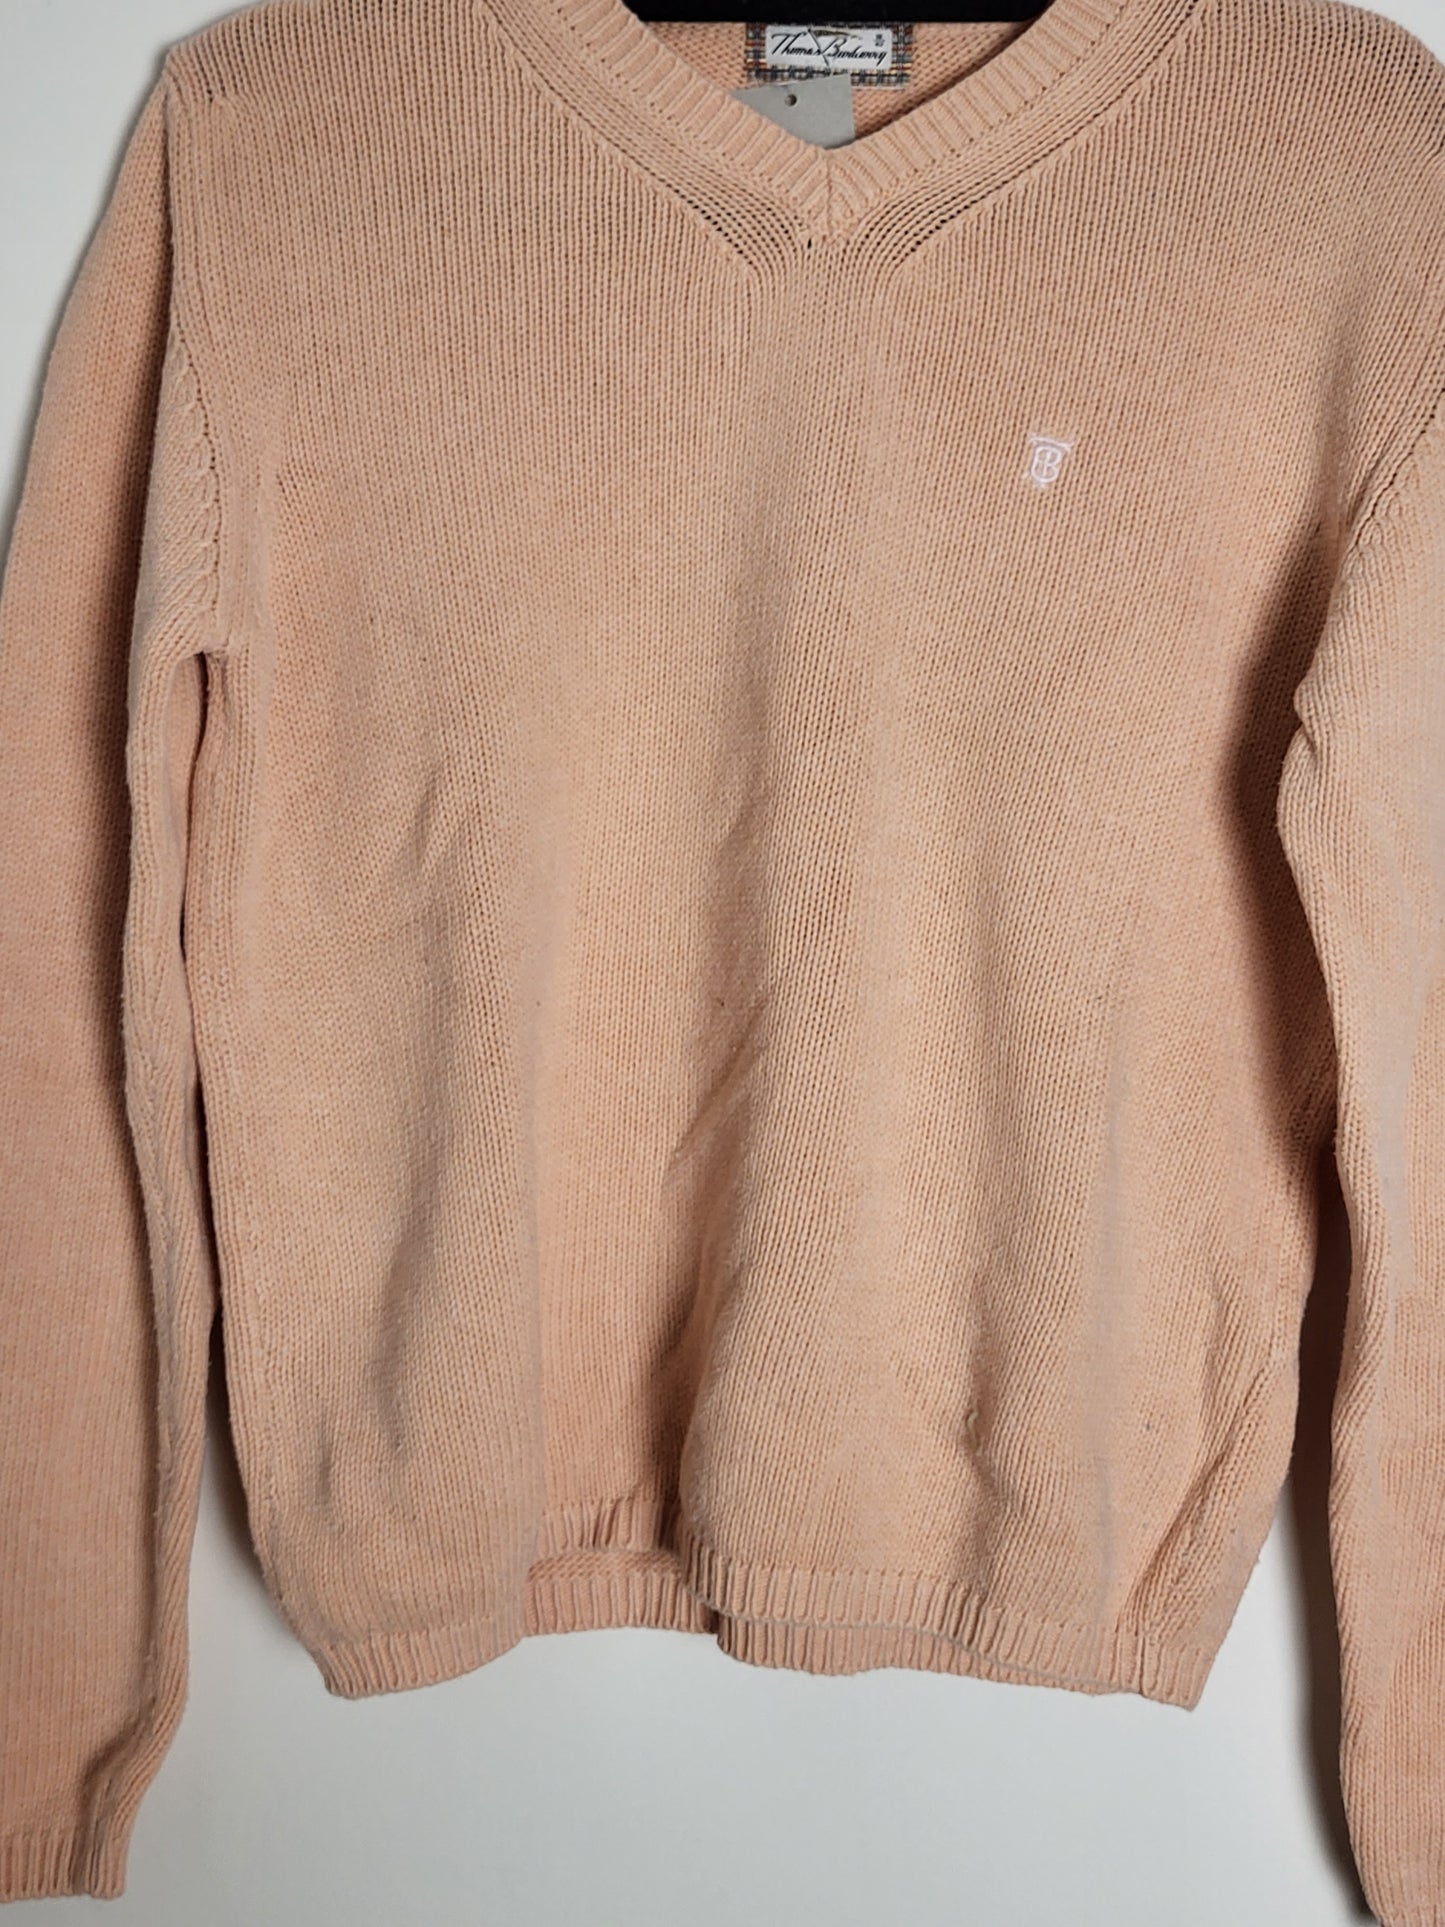 THOMAS BURBERRY - Vintage Pullover - Klassisch mit Logo - Lachs - Damen - M